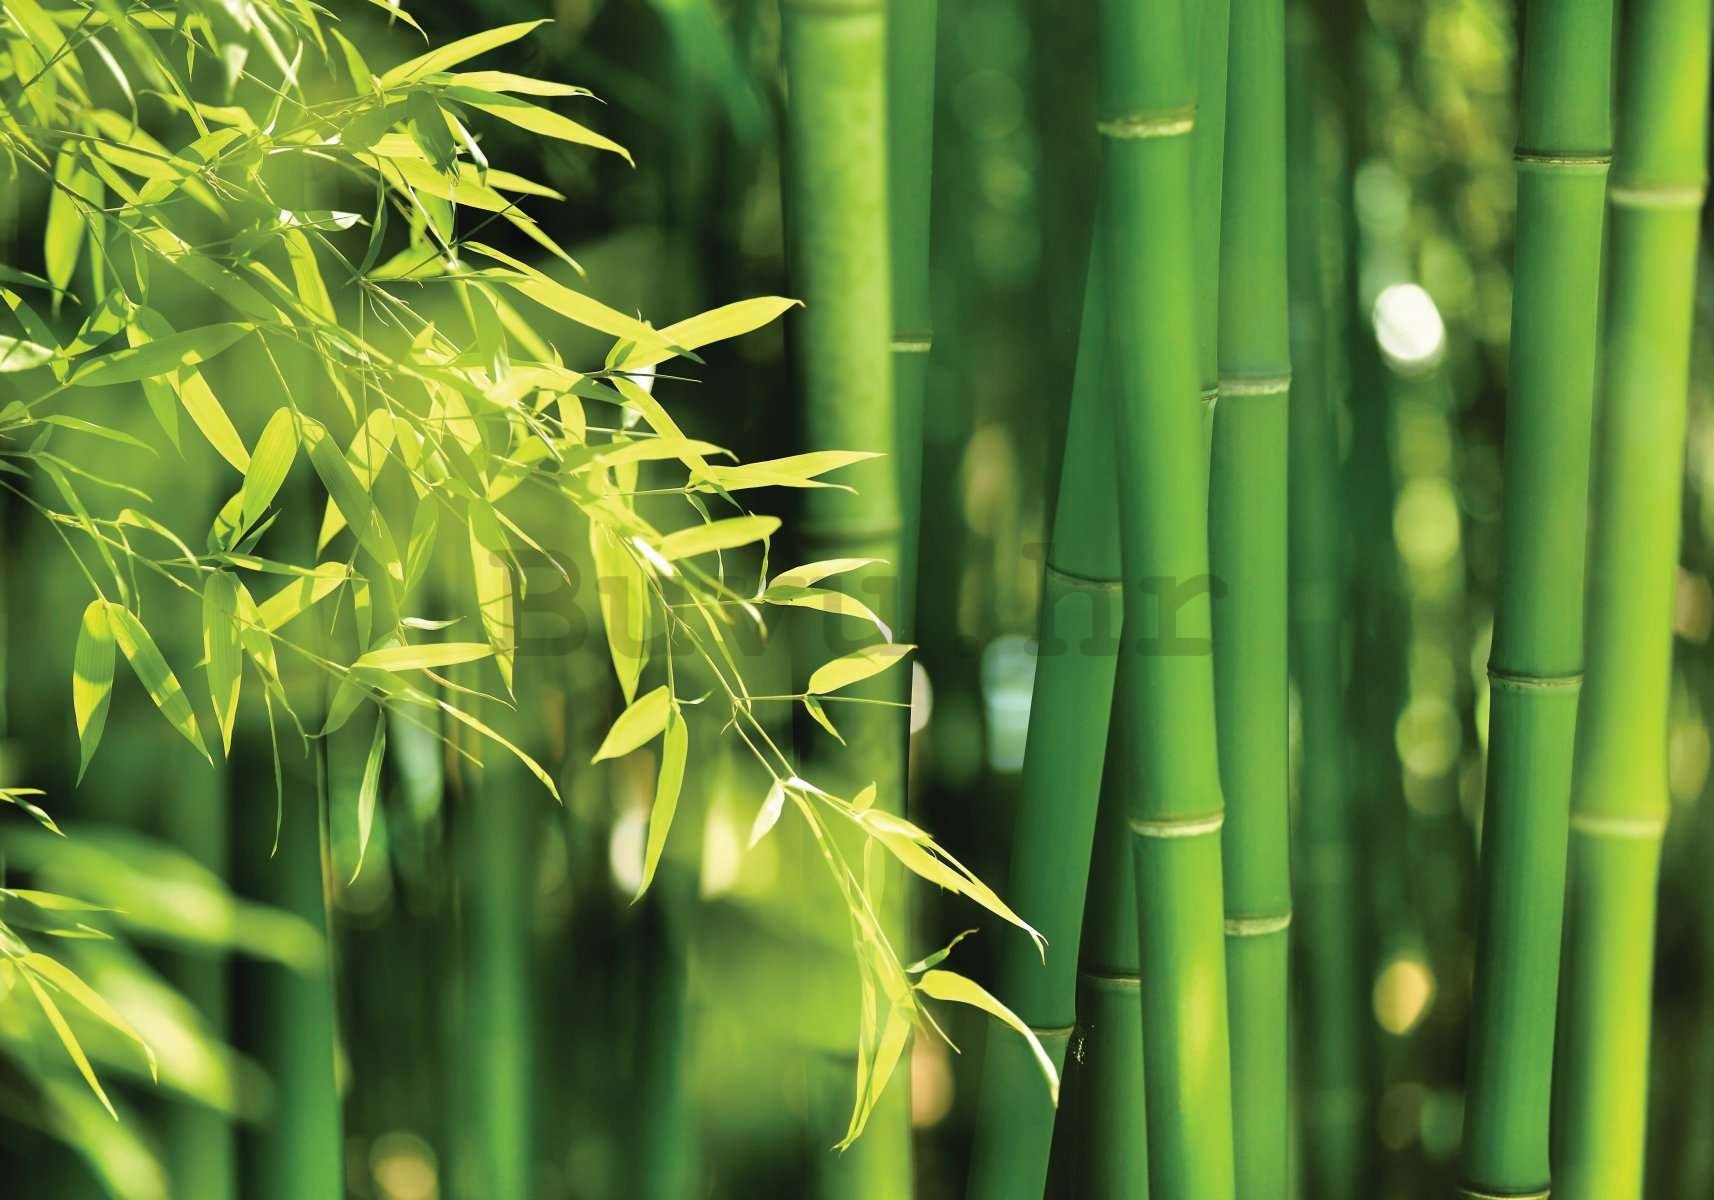 Vlies foto tapeta: Zeleni bambus - 400x280 cm